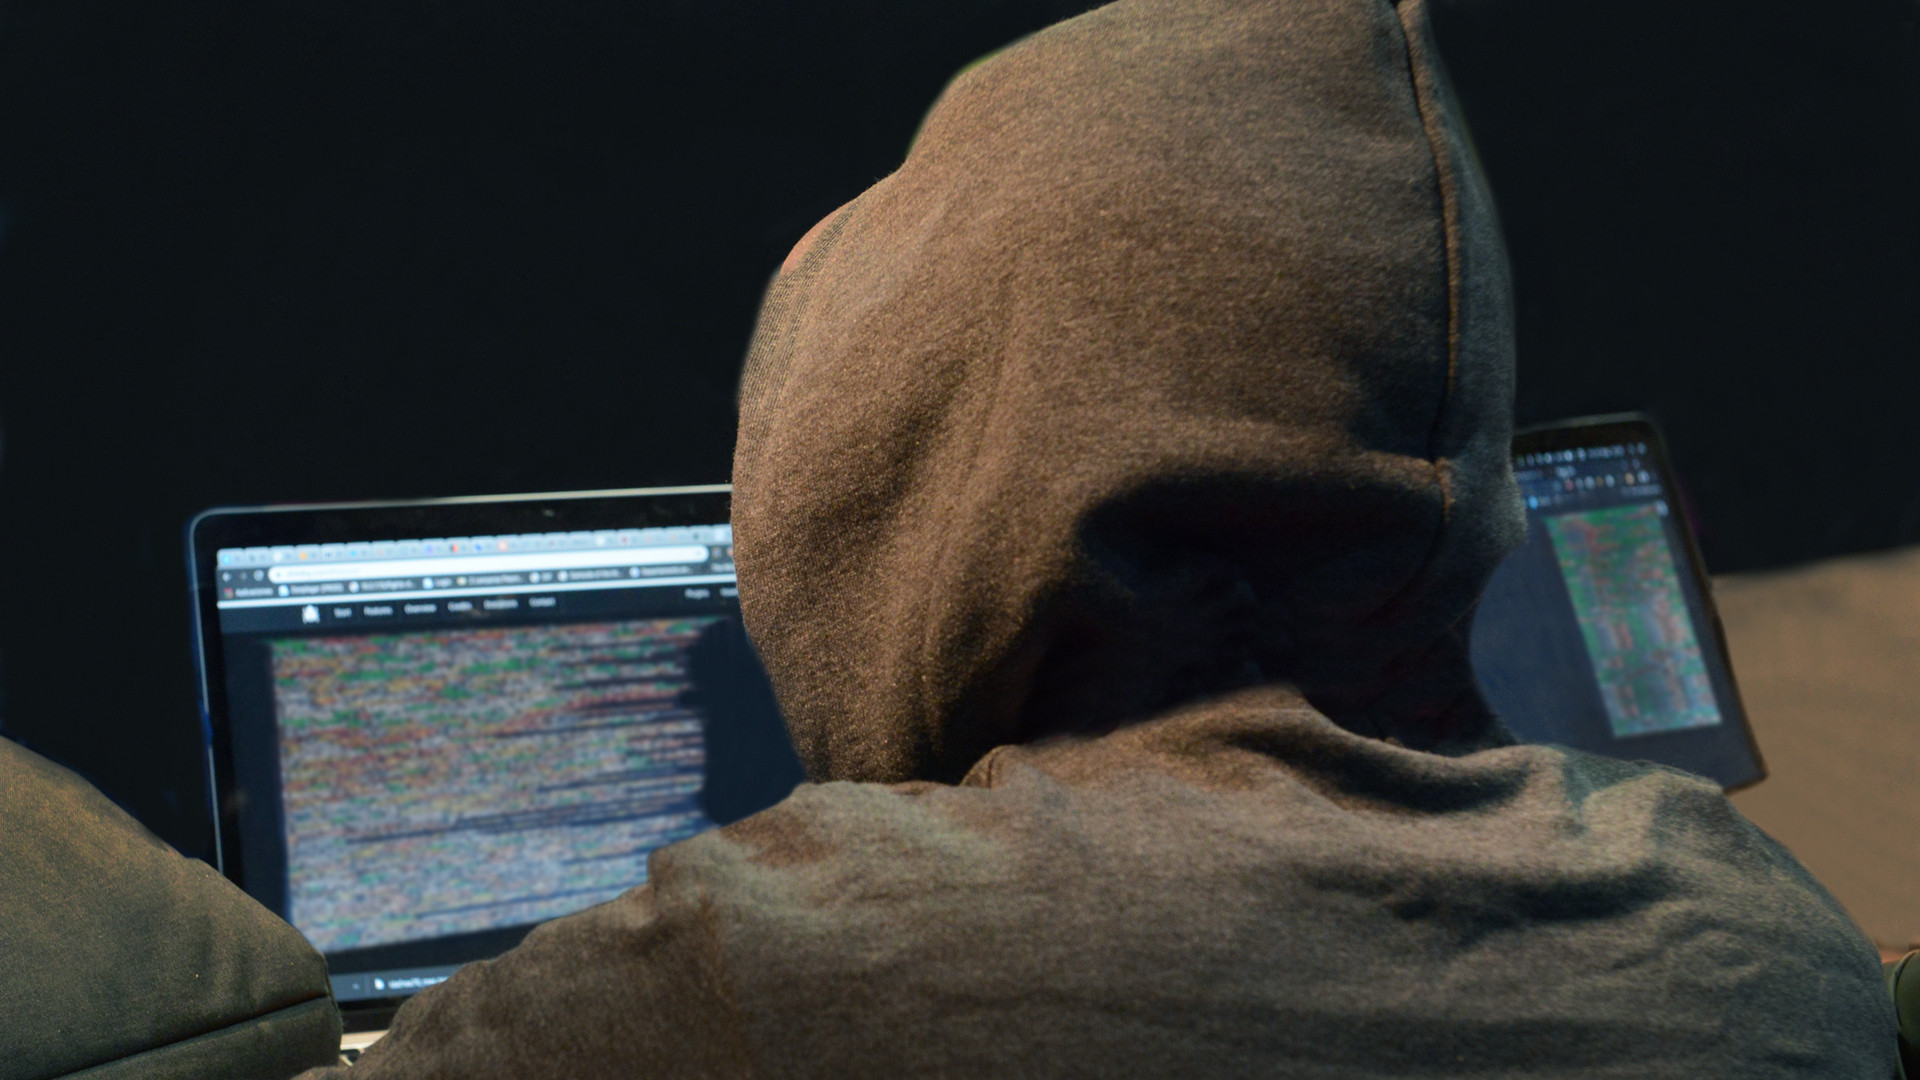 Los hackers son personas especialmente capacitadas para vulnerar sistemas informáticos por diferentes motivos (AFP)